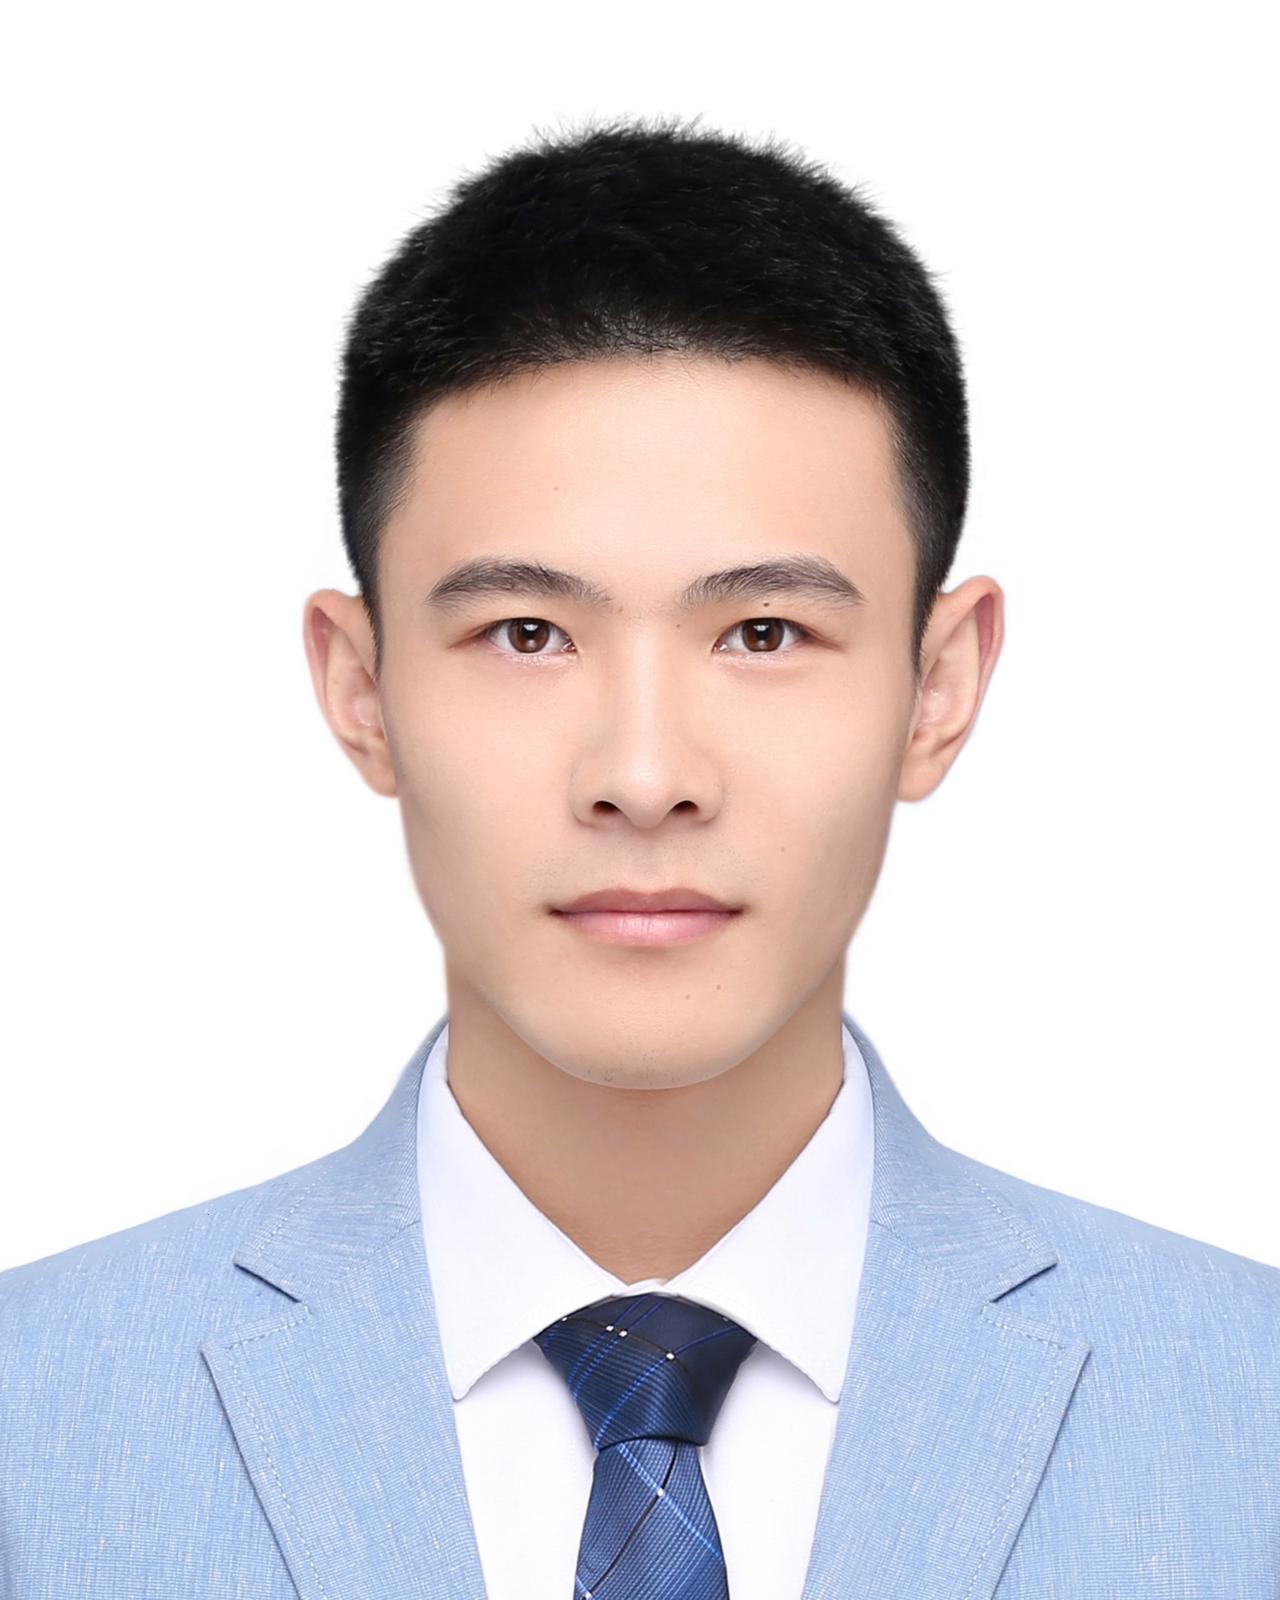 Kun Xie profile picture in white shirt and blue blazer, dark blue tie